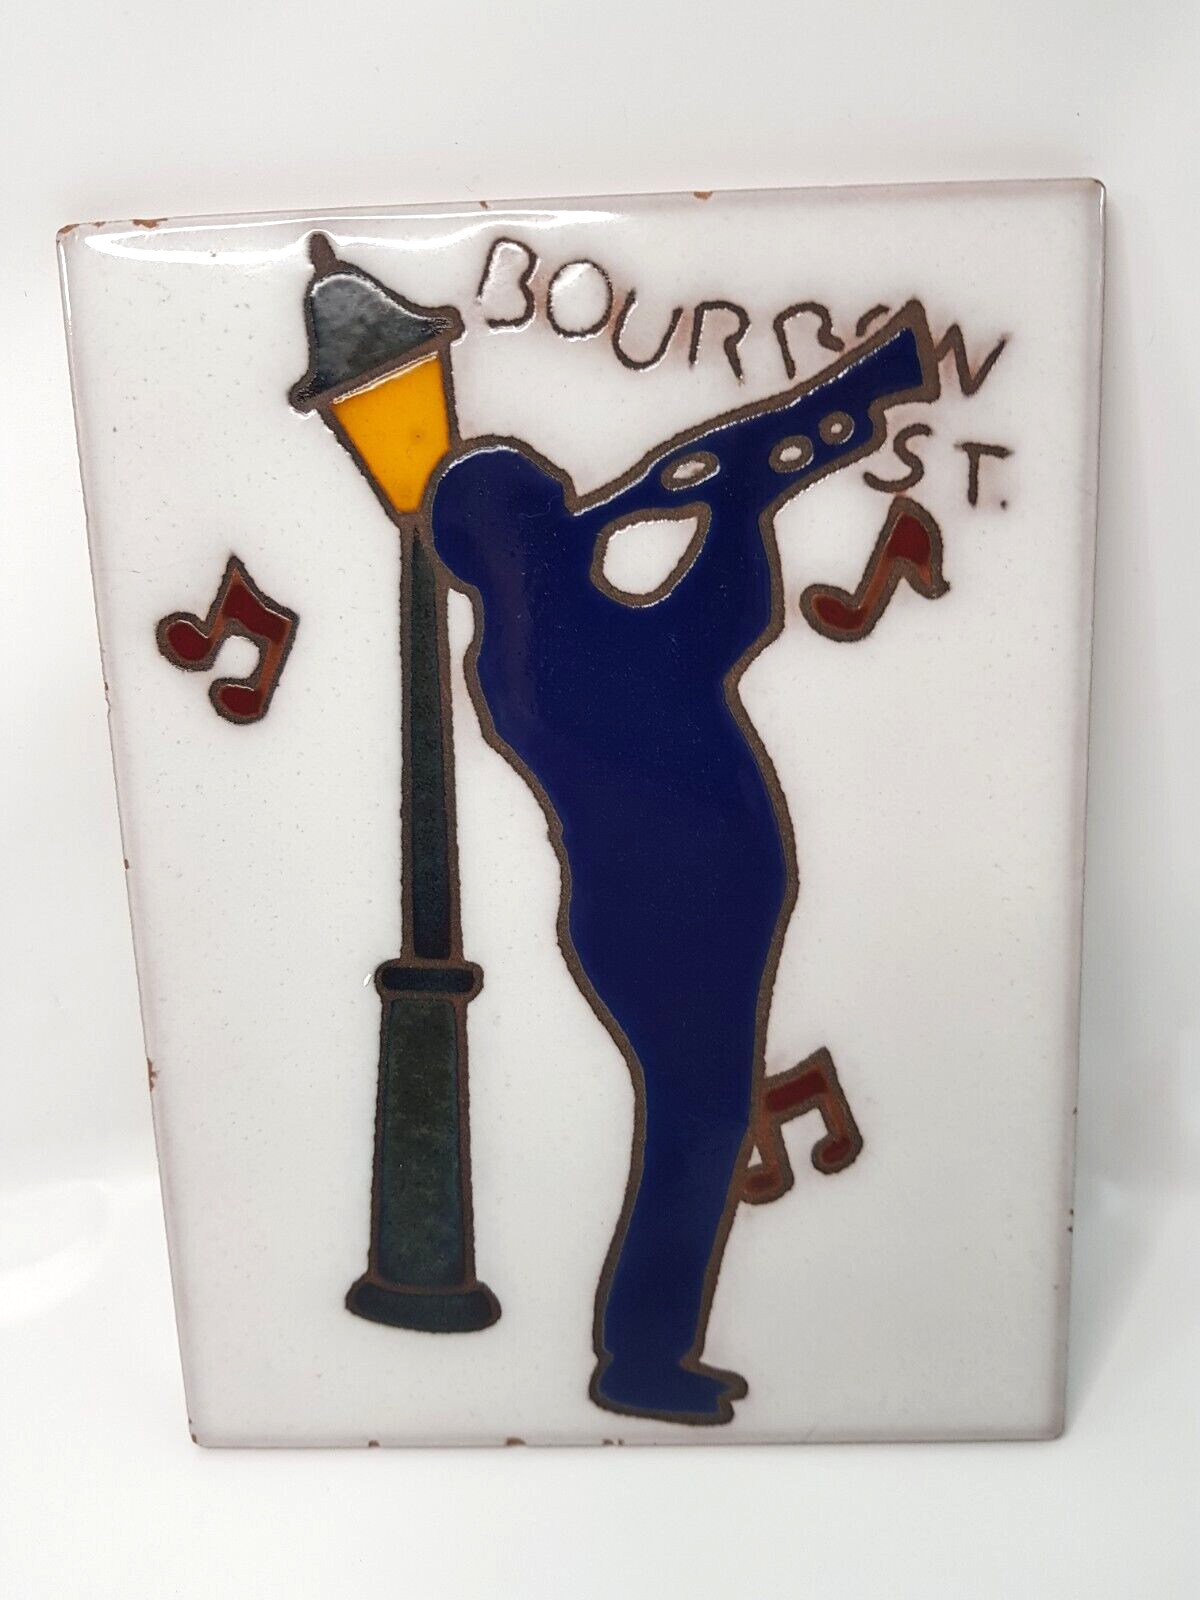 NEW ORLEANS LA Bourbon Street Louis Armstrong Trumpet Decorative Tile Ceramic